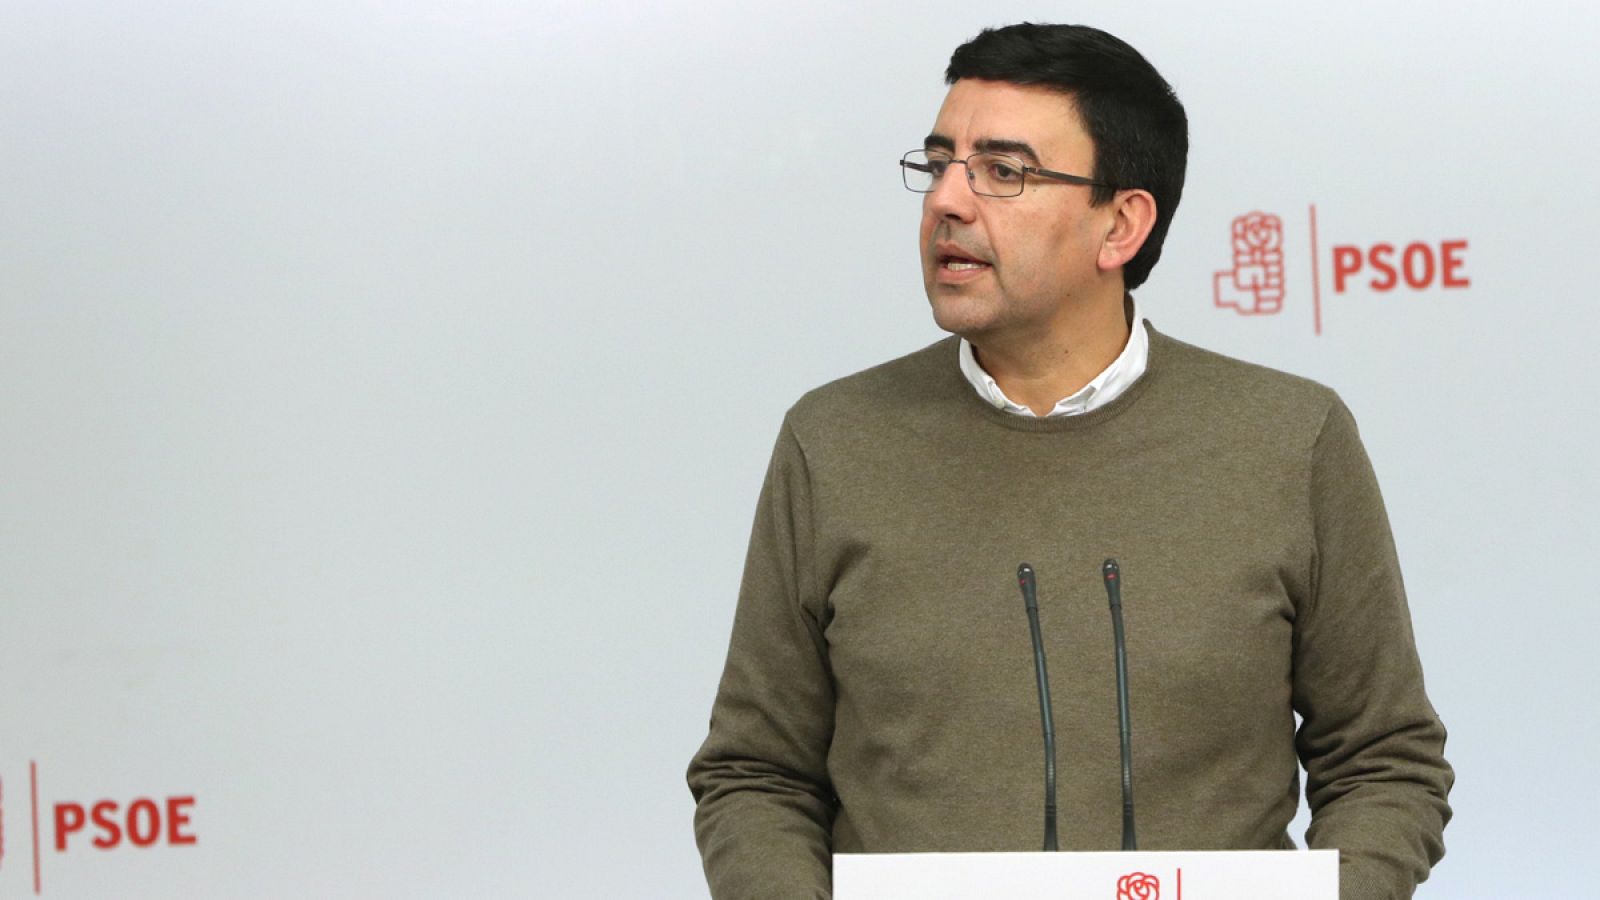 El portavoz de la comisión gestora del PSOE, Mario Jiménez